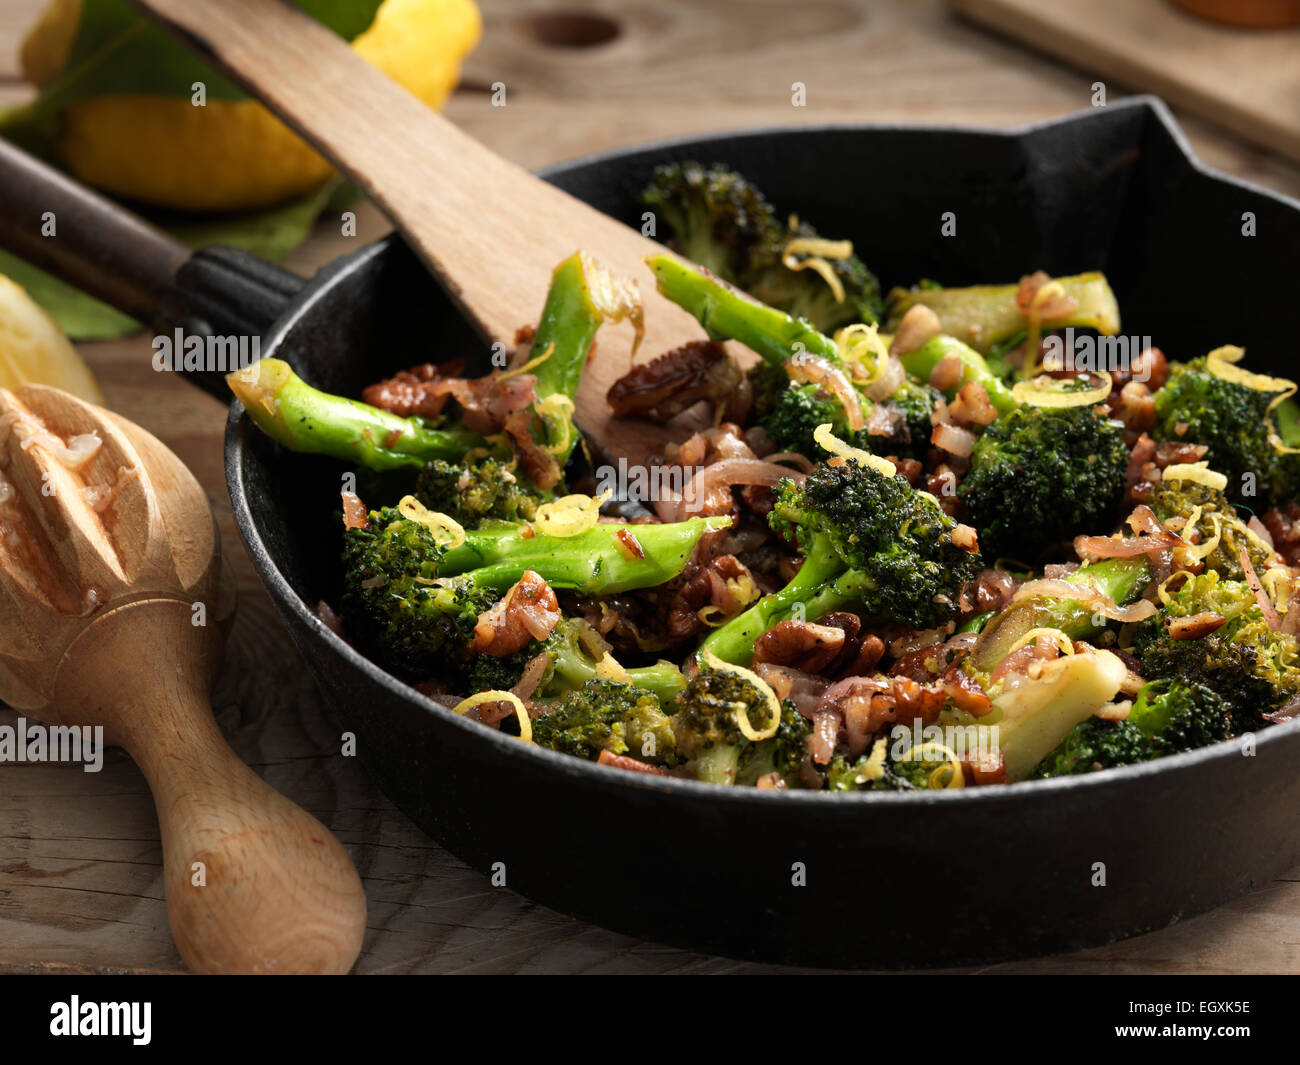 Broccolini Stock Photo